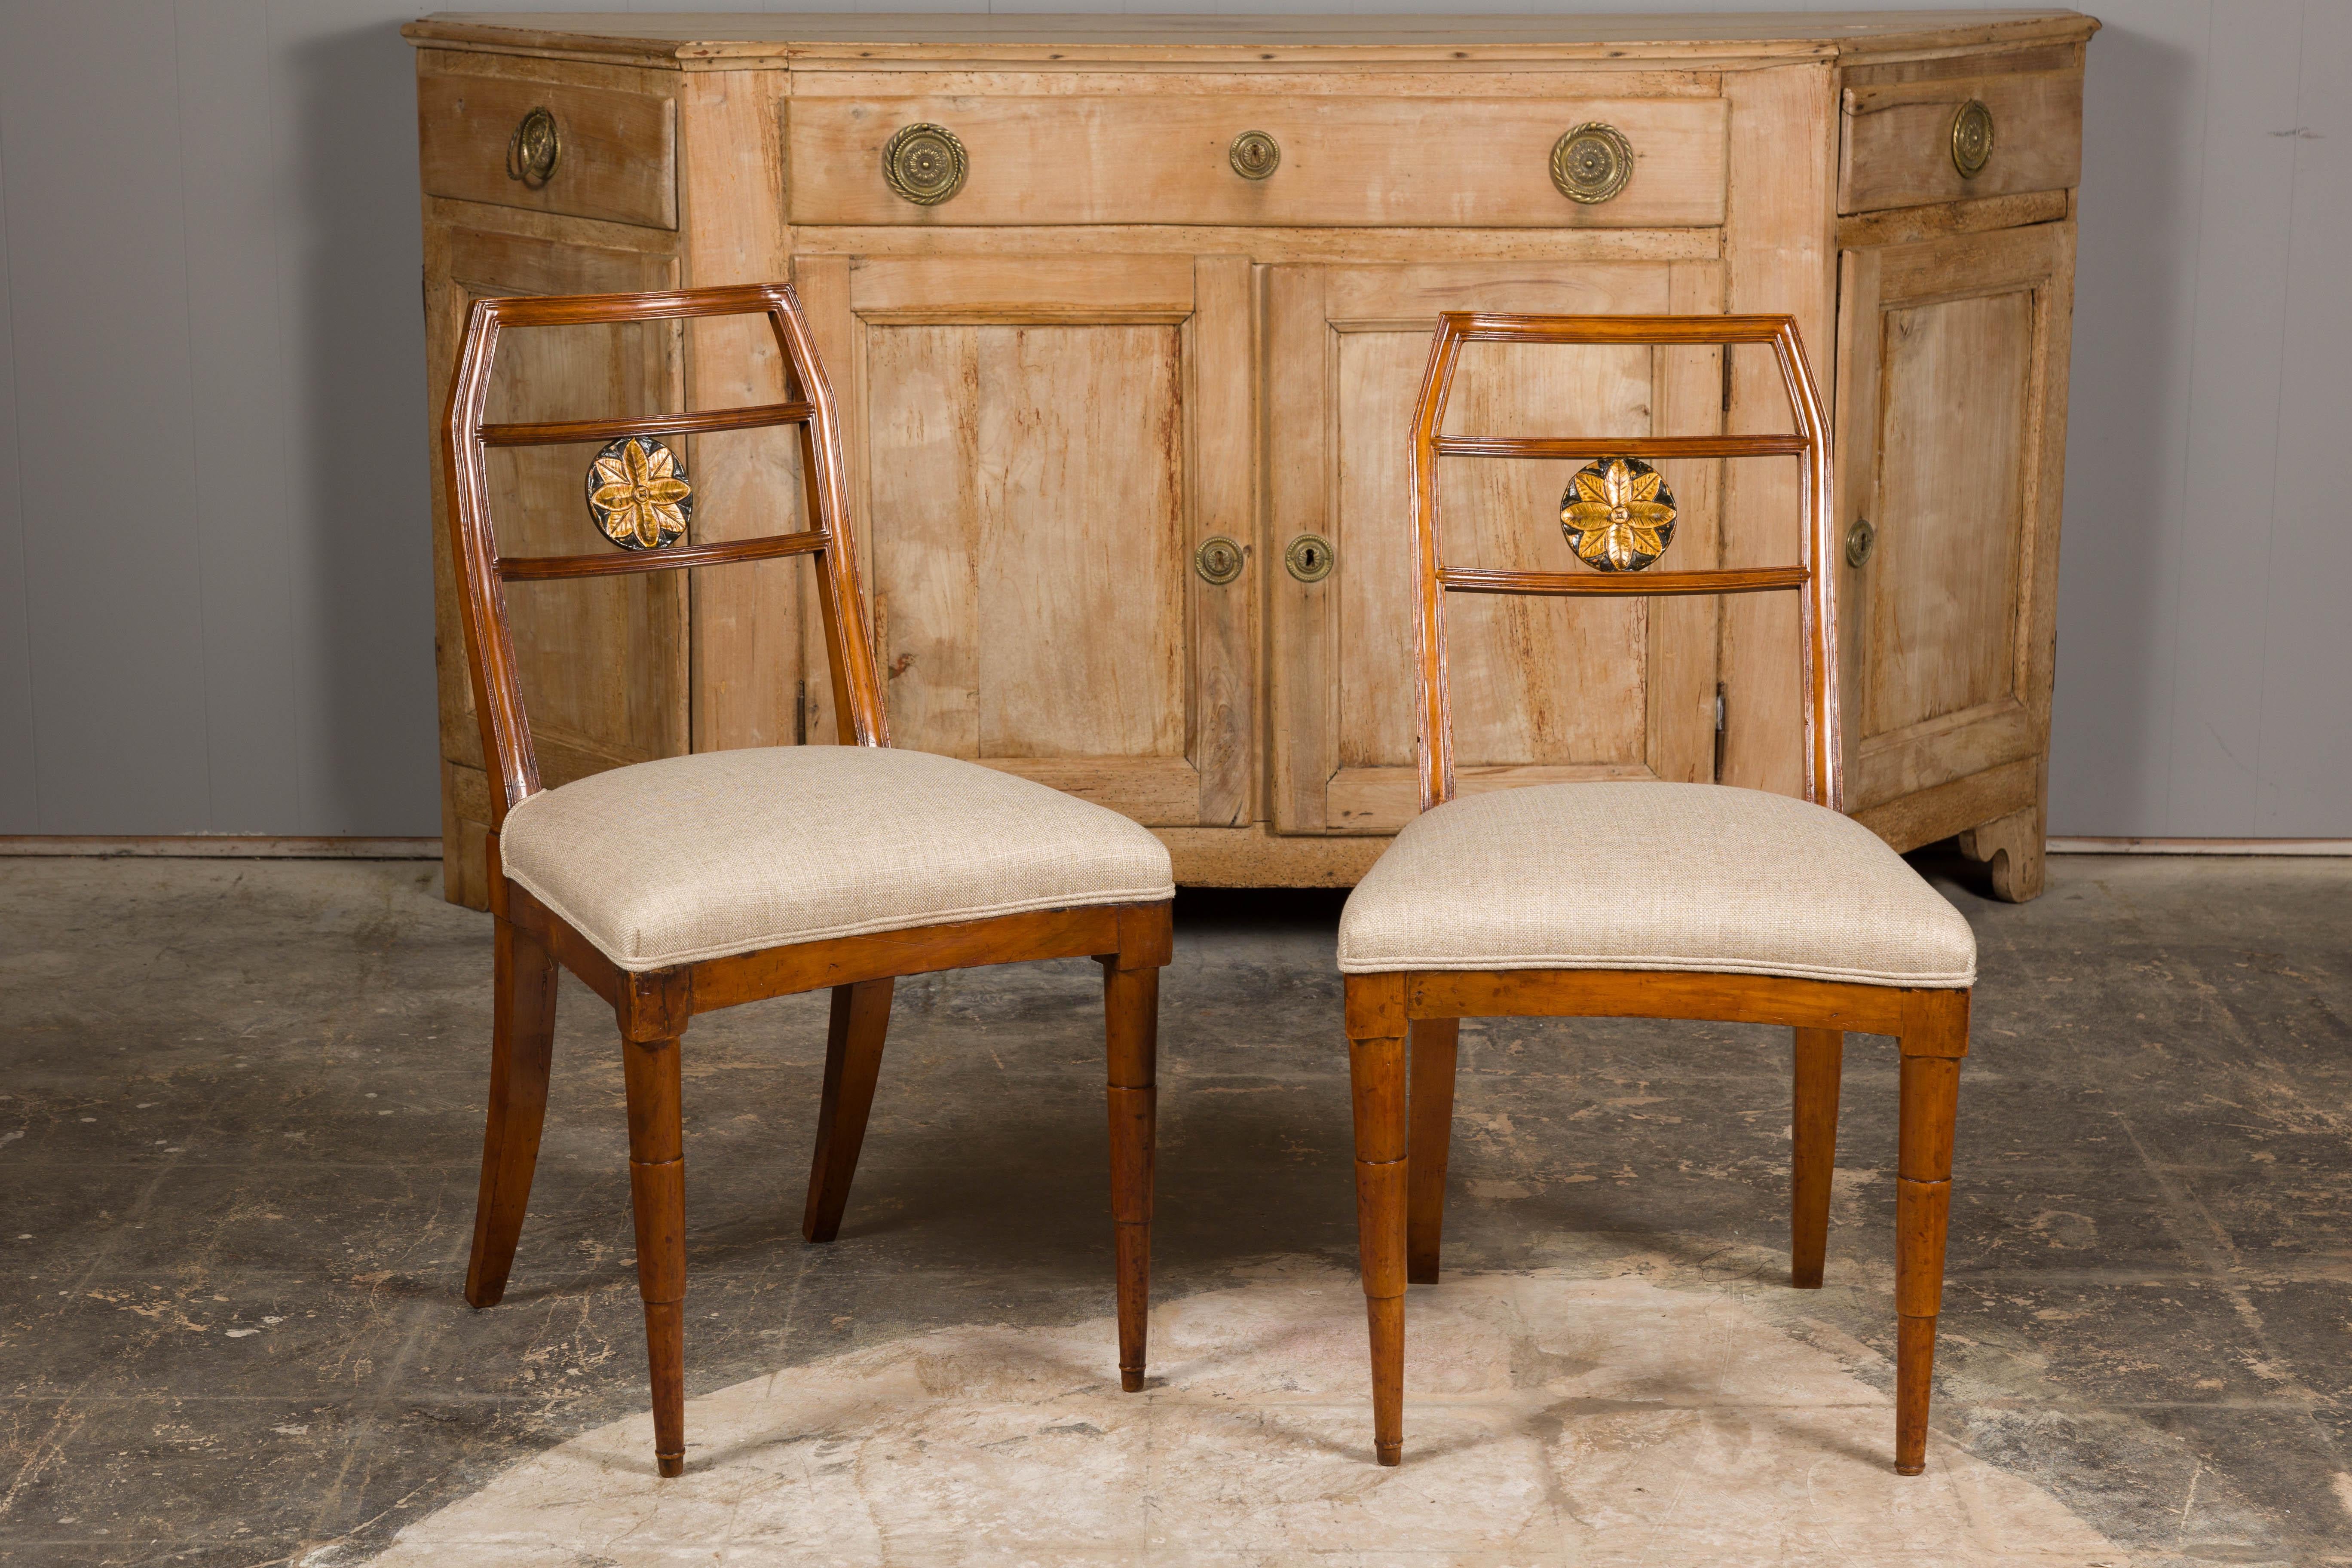 Paire de chaises d'appoint italiennes en noyer, datant d'environ 1800, avec médaillon floral sculpté et doré ornant chaque dossier, tapisserie en lin personnalisée et pieds effilés à l'avant. Cette paire de chaises d'appoint en noyer italien, datant